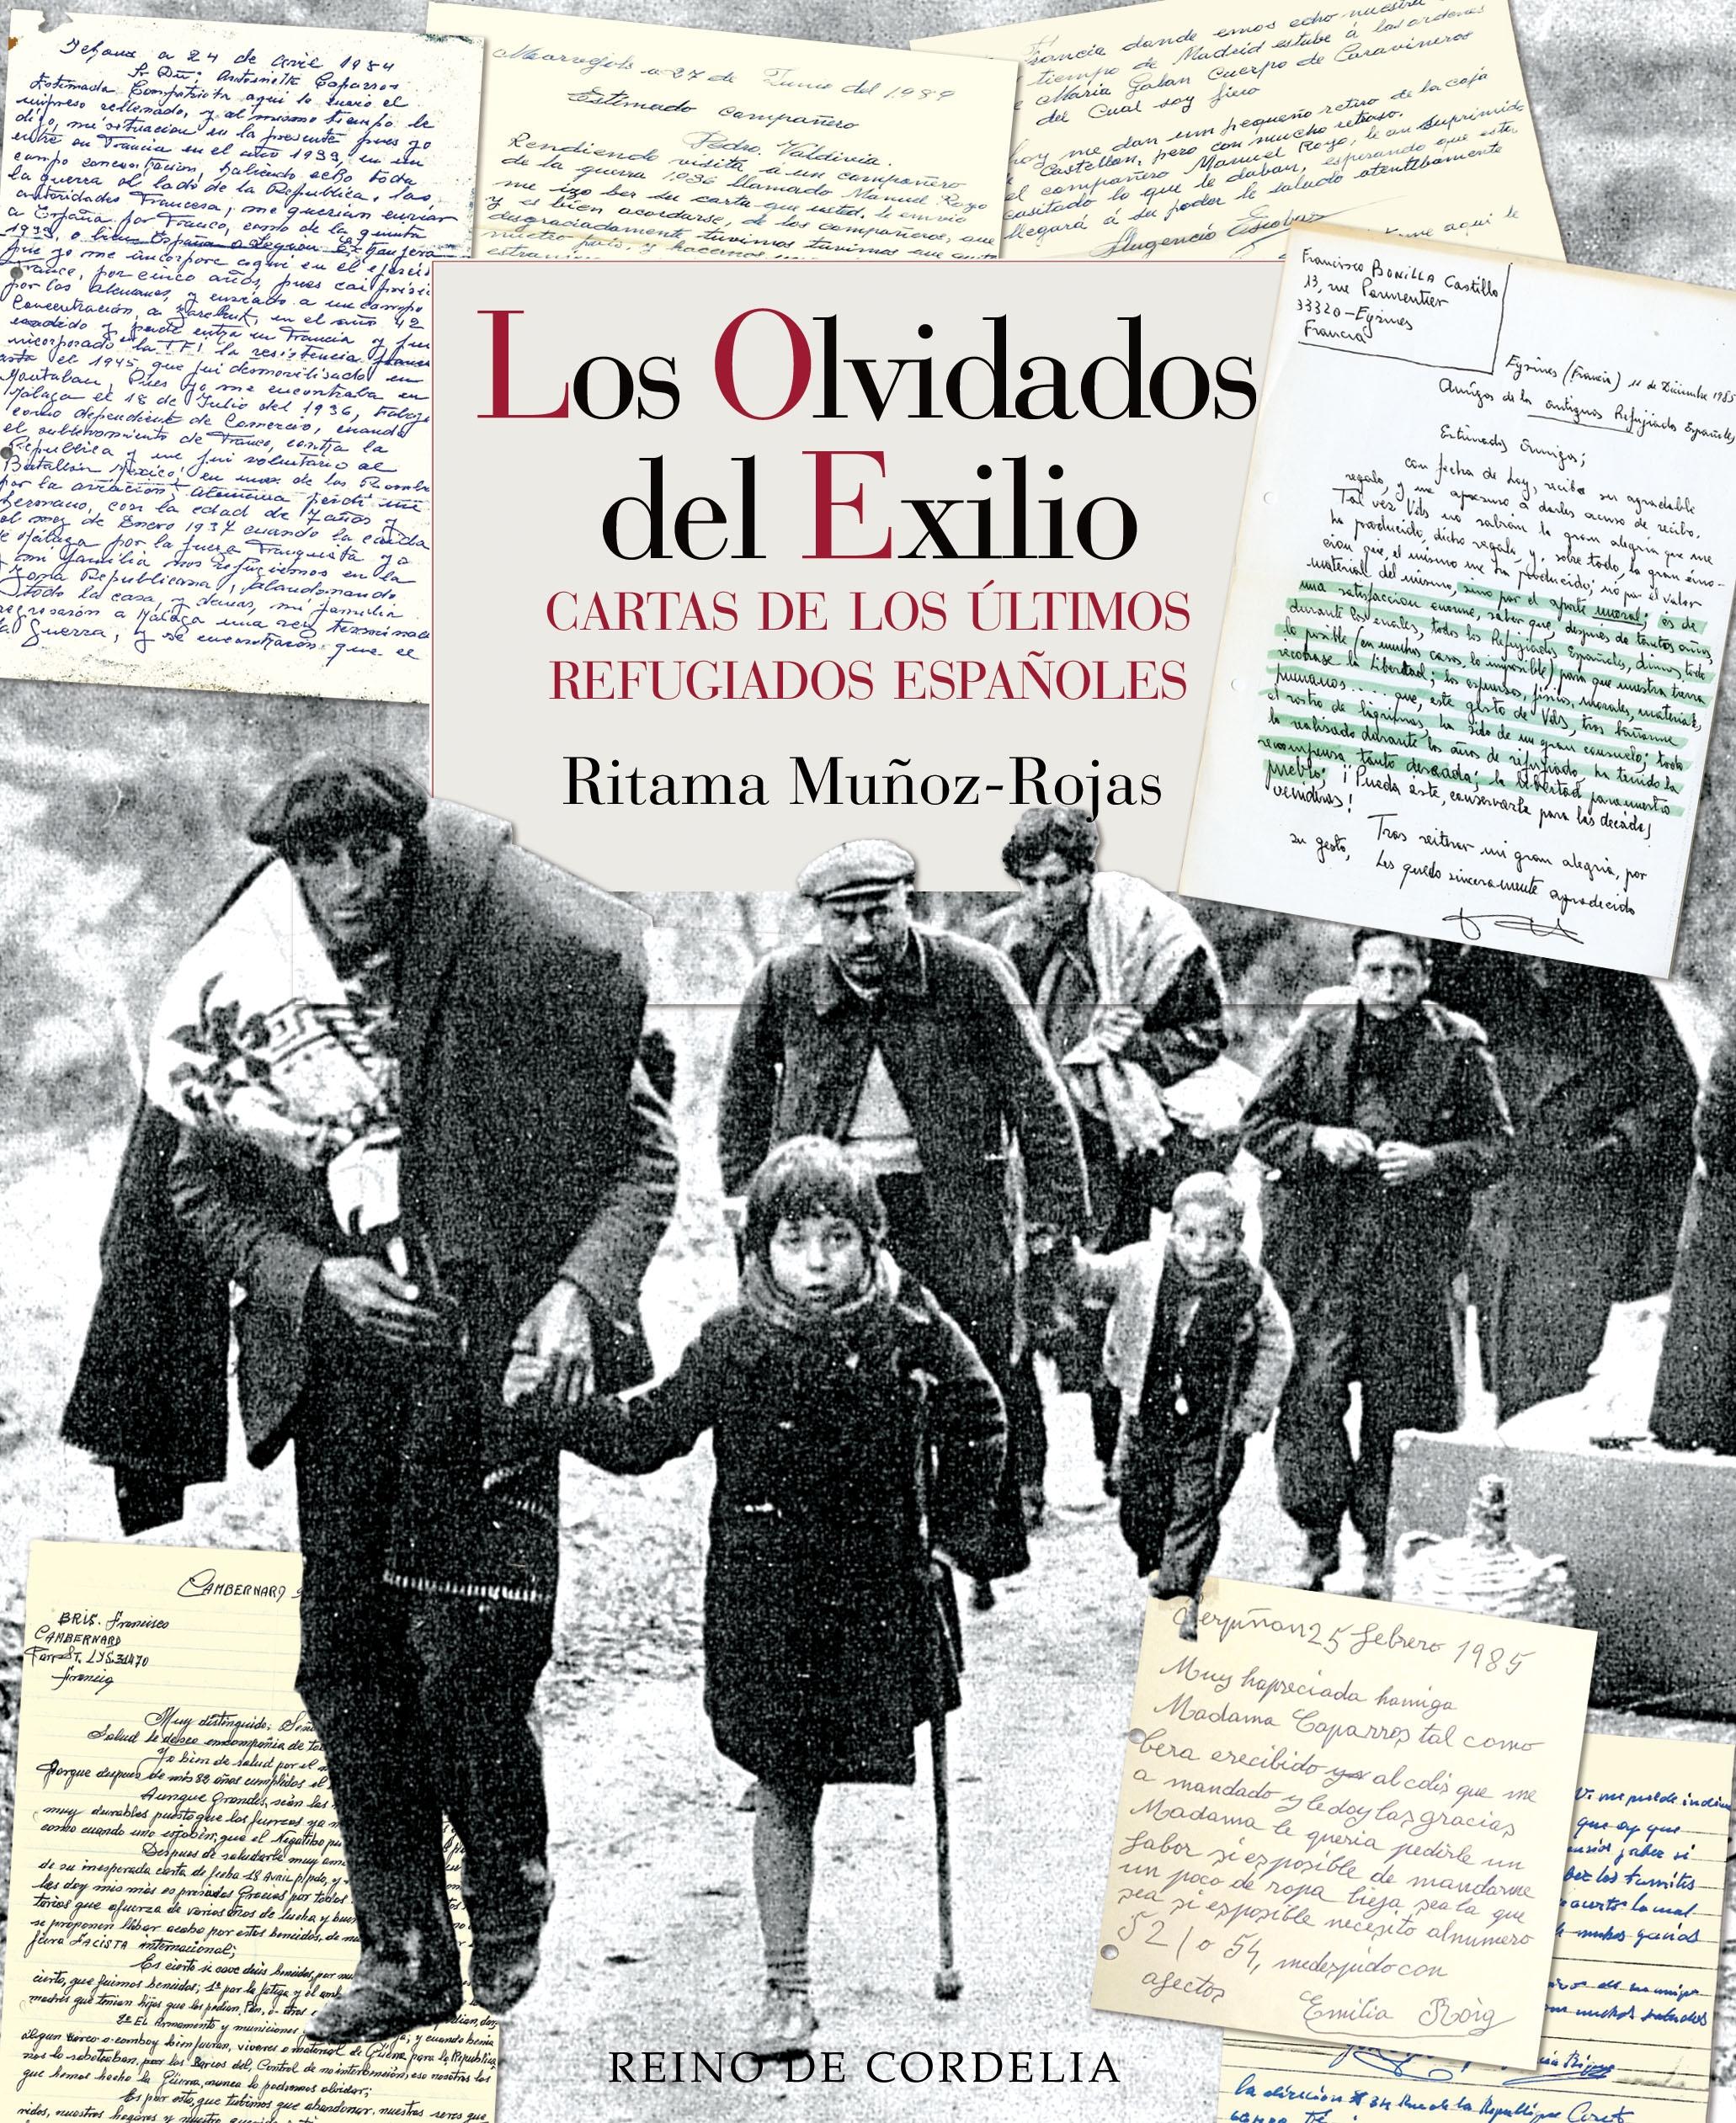 Los Olvidados del Exilio "Cartas de los Ultimos Refugiados Españoles". 